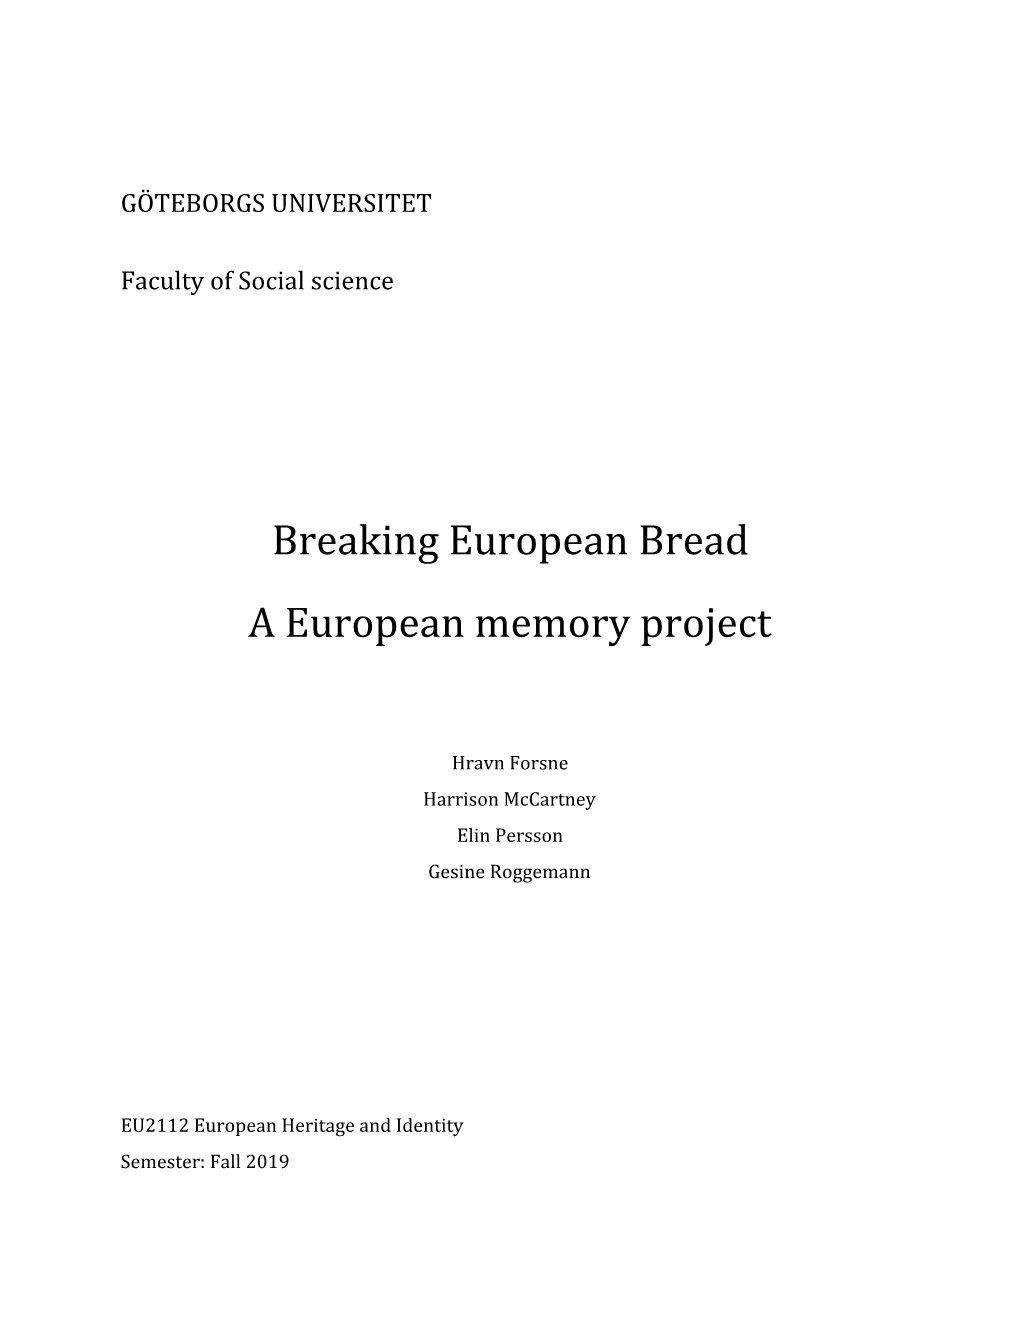 Breaking European Bread a European Memory Project